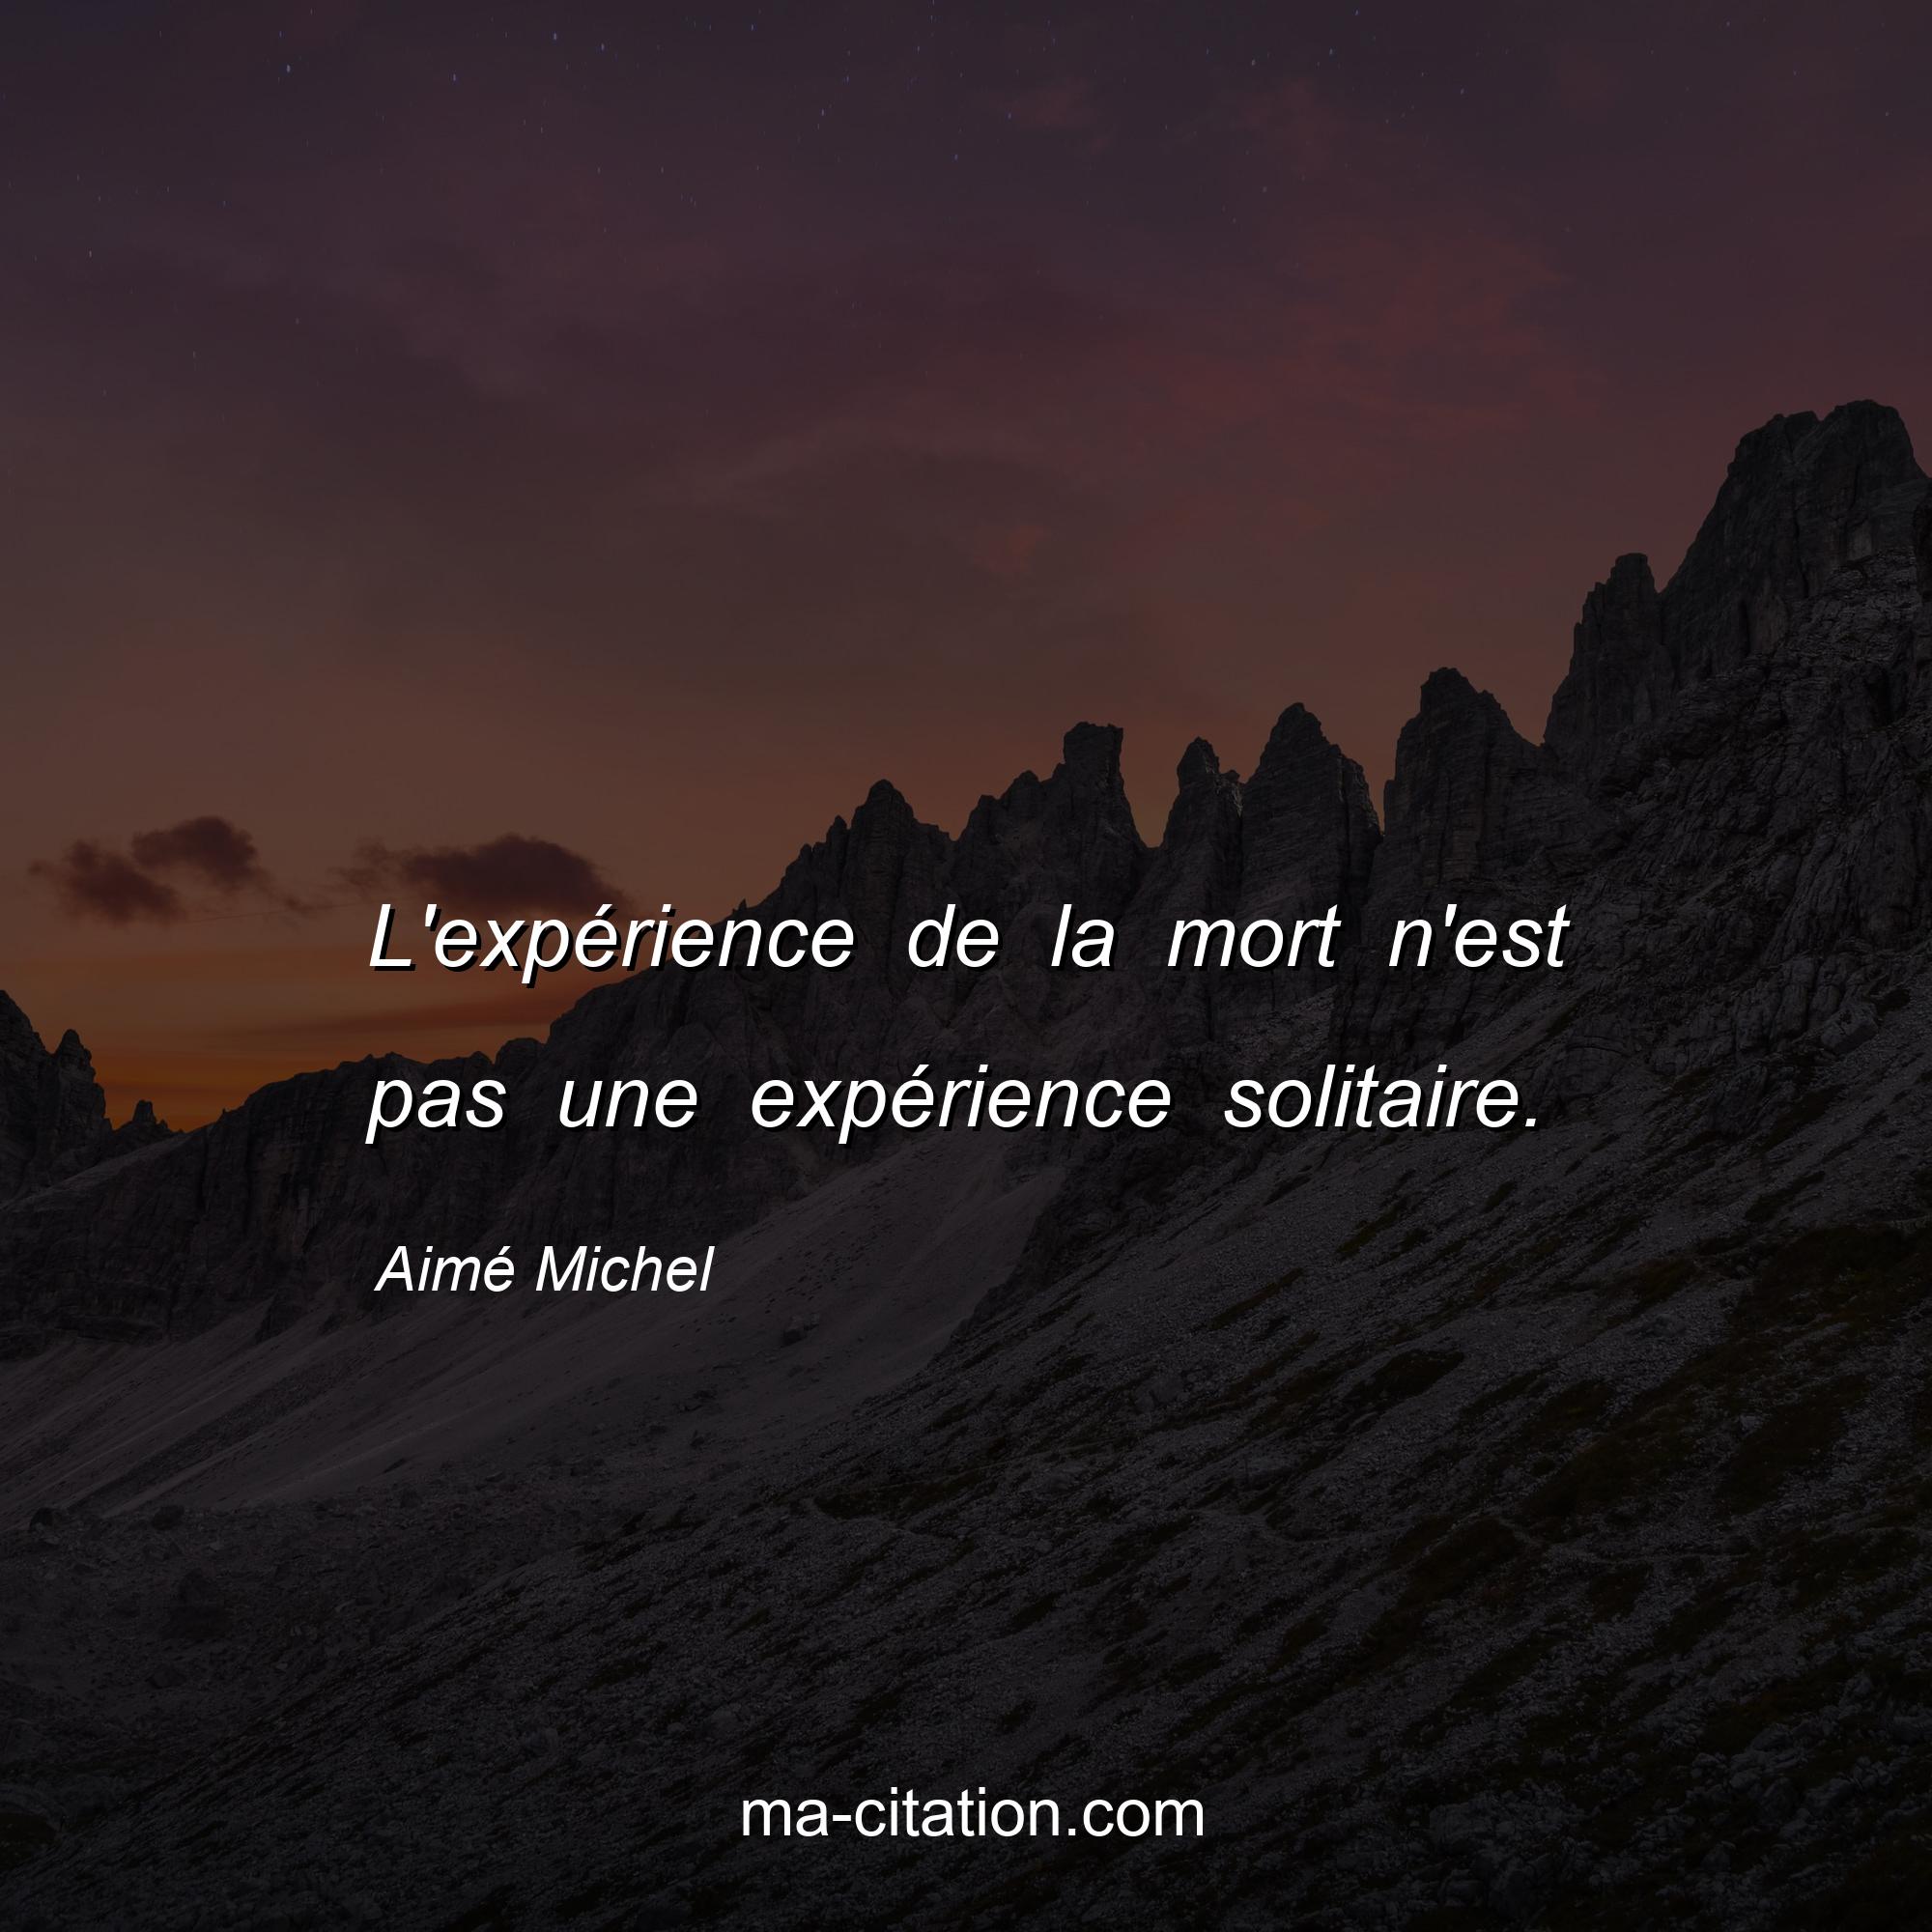 Aimé Michel : L'expérience de la mort n'est pas une expérience solitaire.